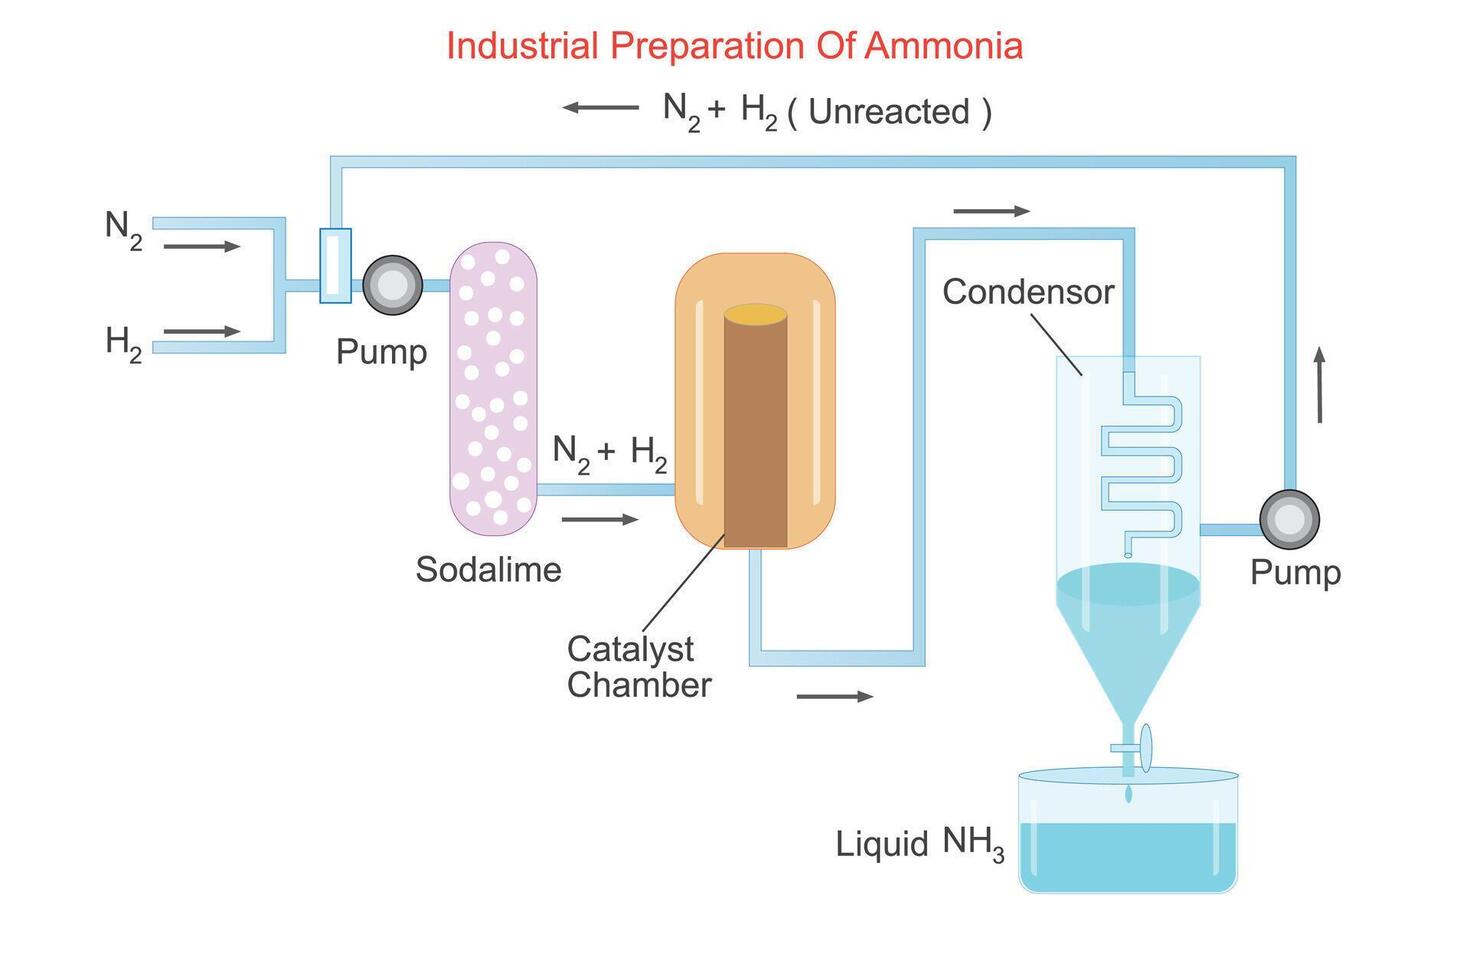 ammoniaca è industrialmente sintetizzato di haber bosch processi, combinando azoto idrogeno sotto alto pressione e temperatura, facilitato di ferro catalizzatori, cedevole un' vitale composto per fertilizzanti vettore